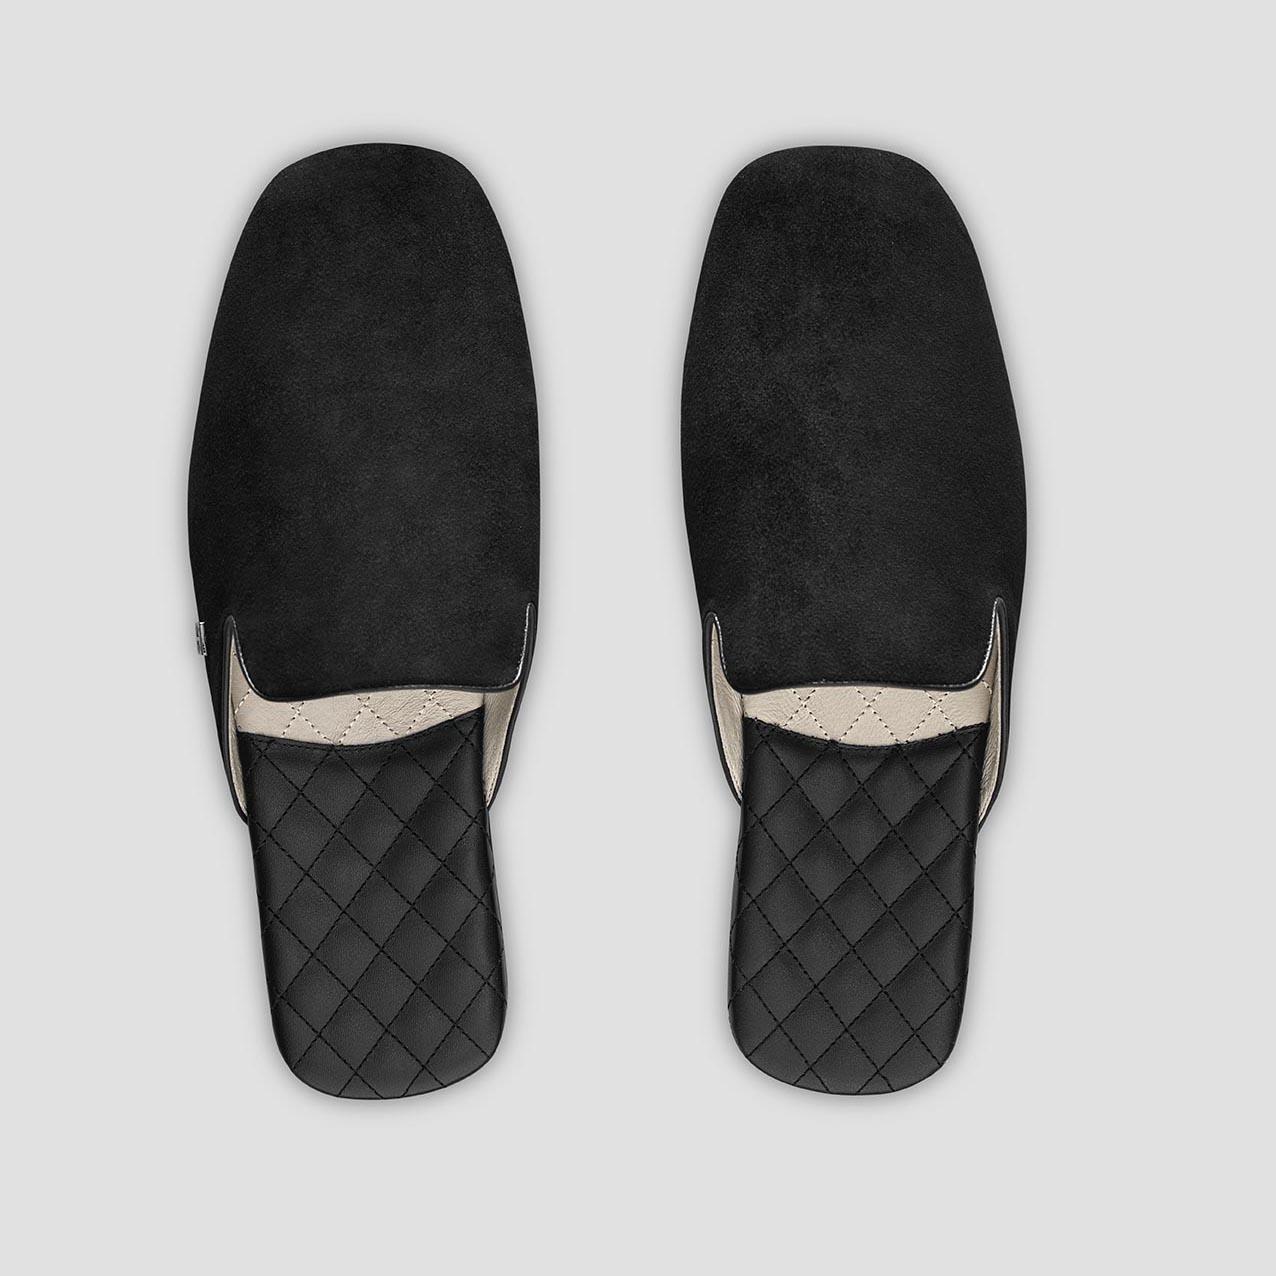 Тапочки Togas Реон черные мужские кожаные, размер 46-47 тапочки мужские кожаные togas мортен серые р 46 47